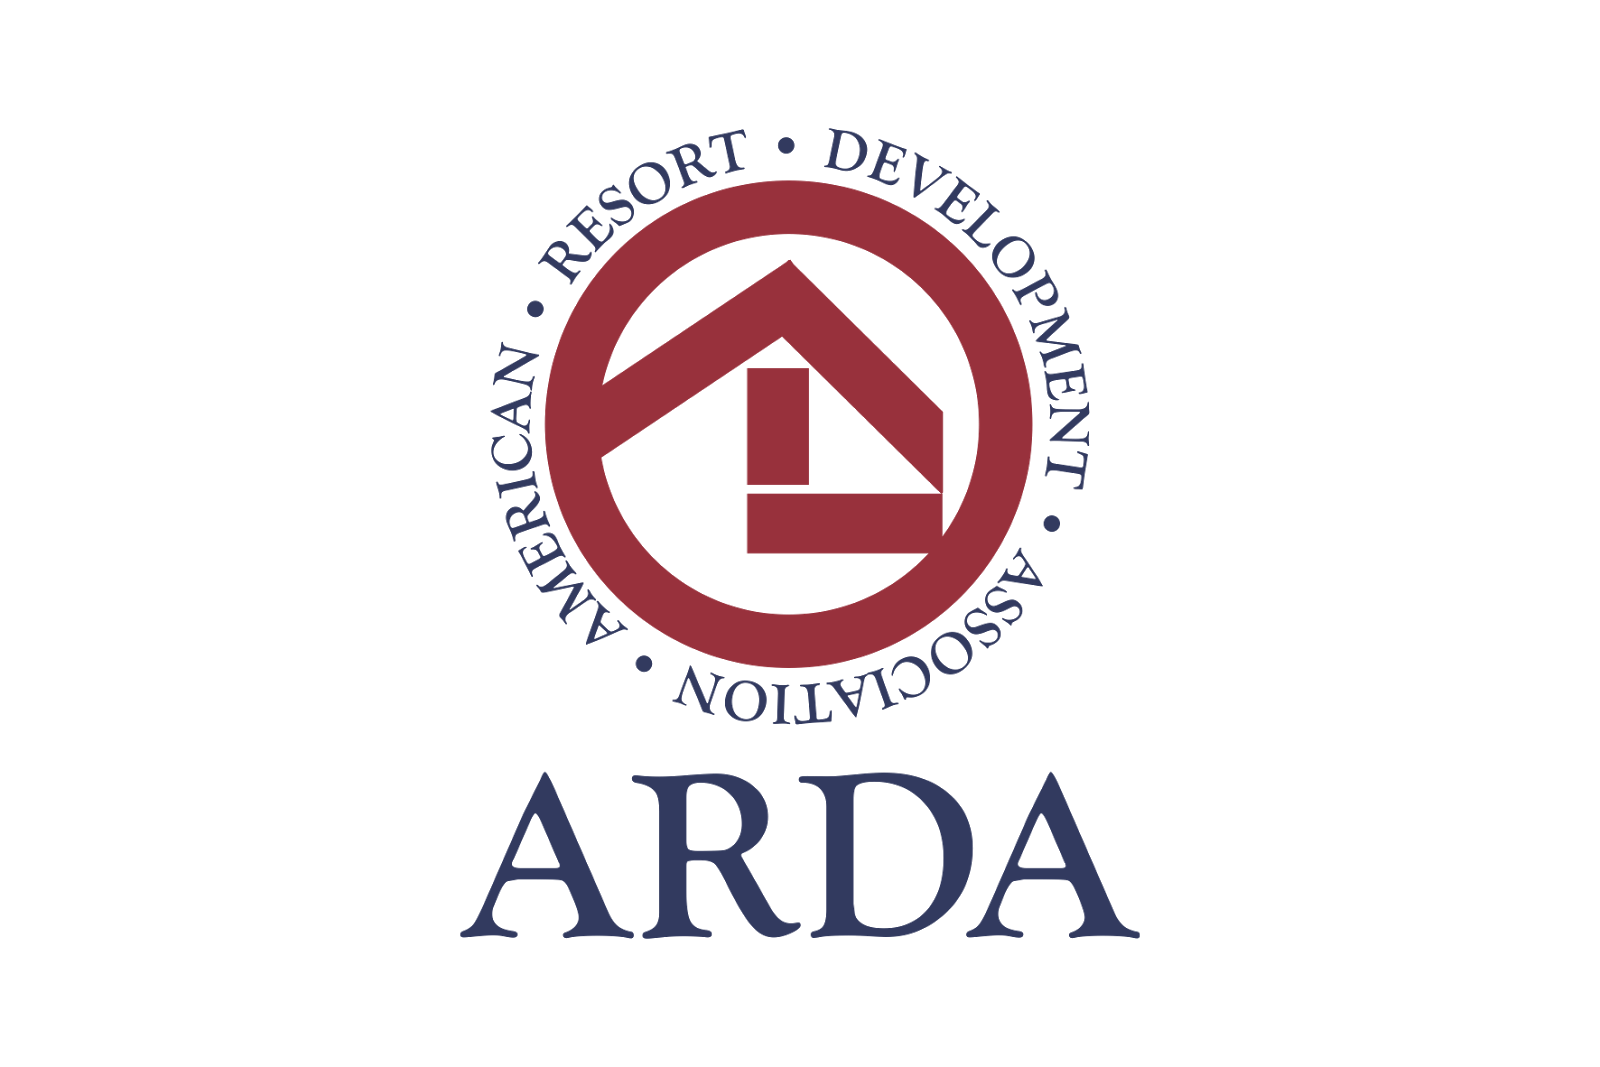 Arda Logo - American Resort Development Association Logo - logo cdr vector